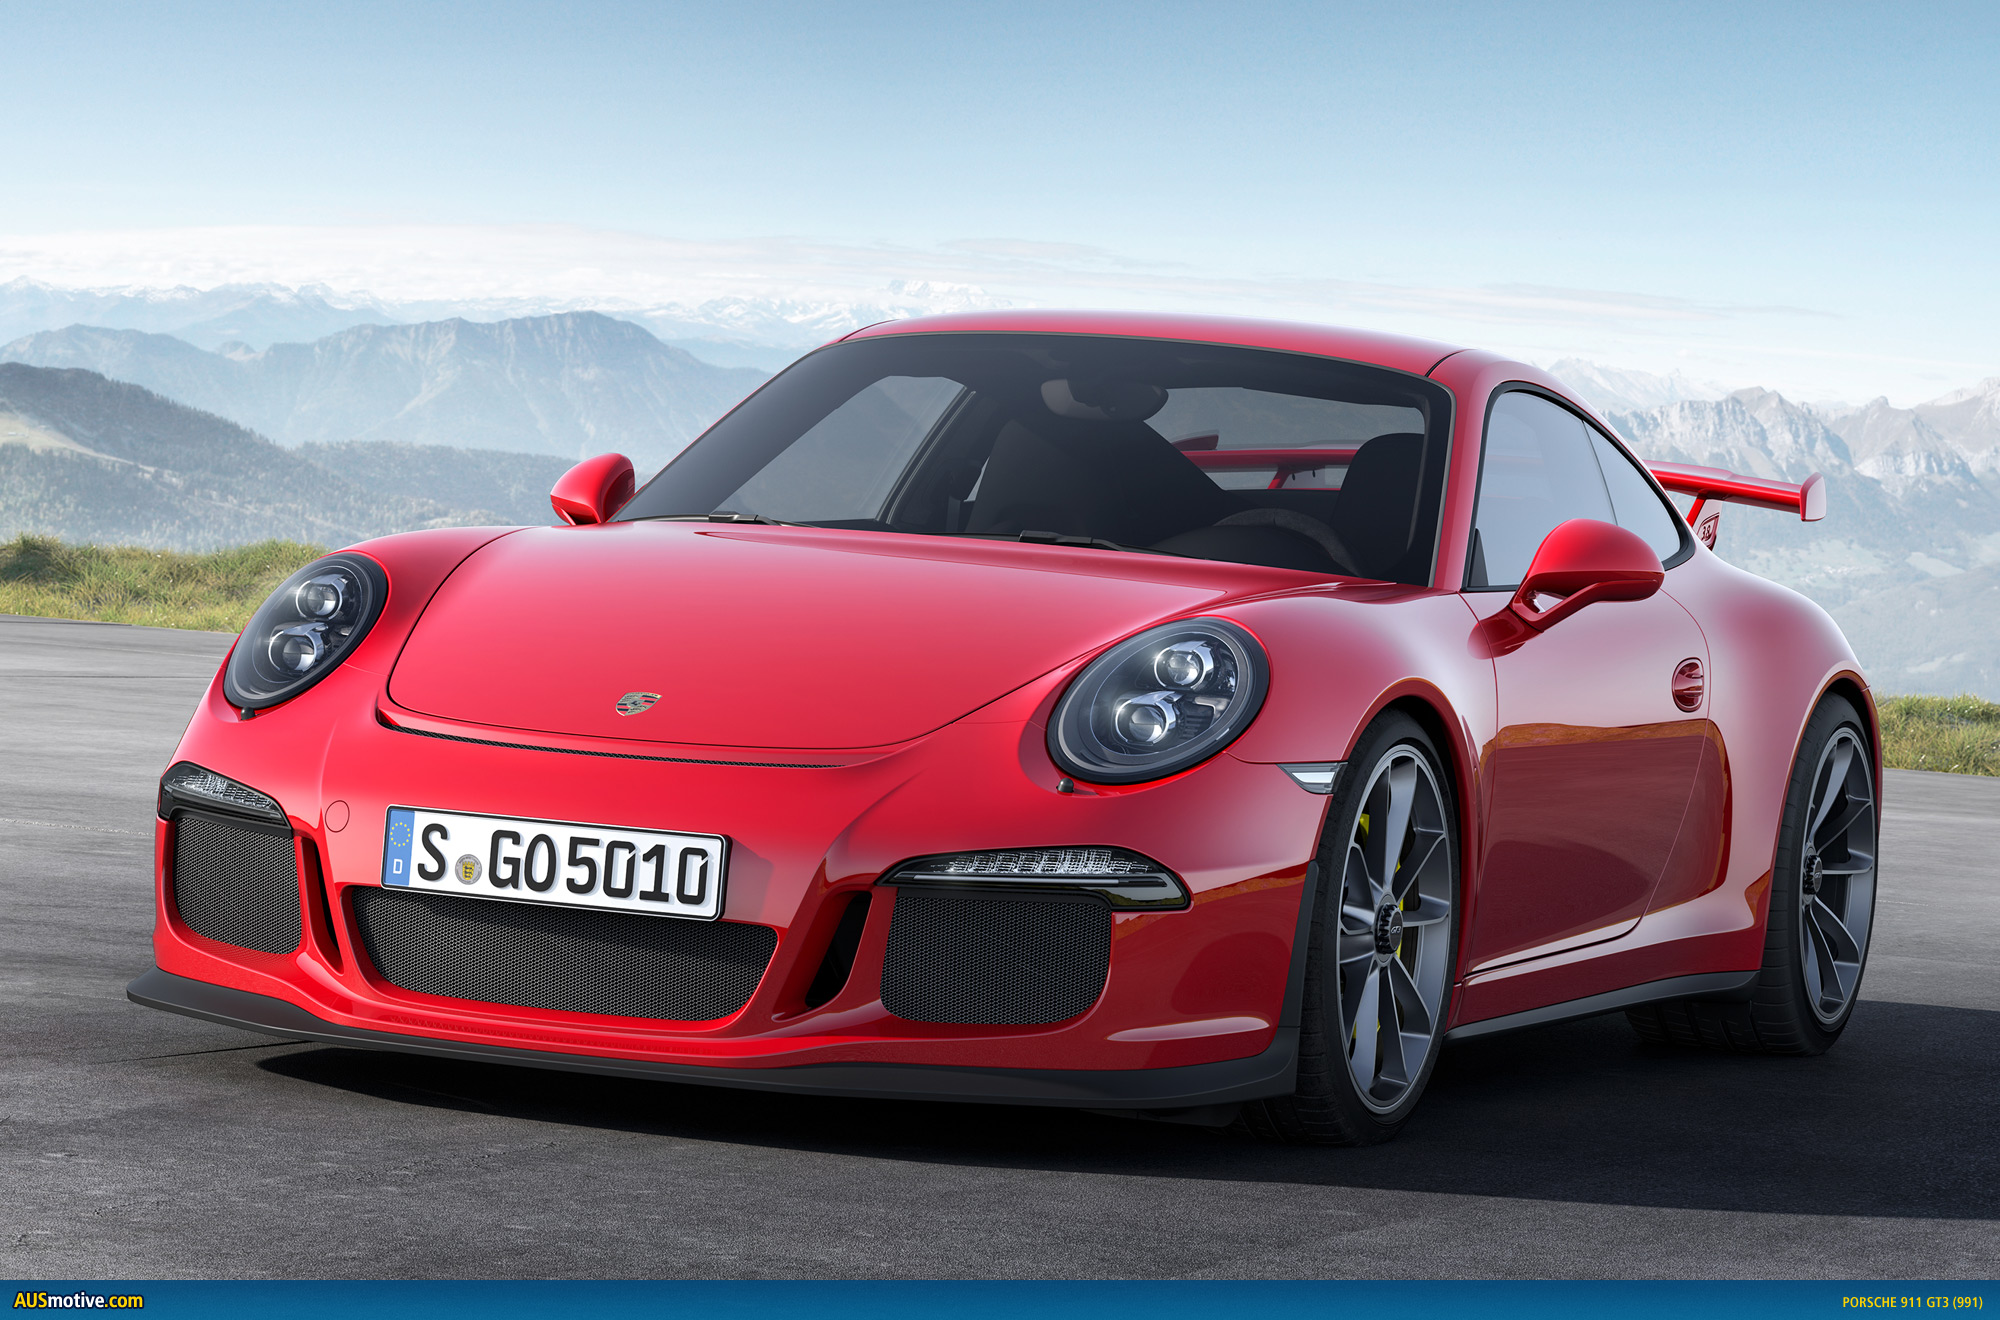 AUSmotive.com » Geneva 2013: Porsche 911 GT3 revealed